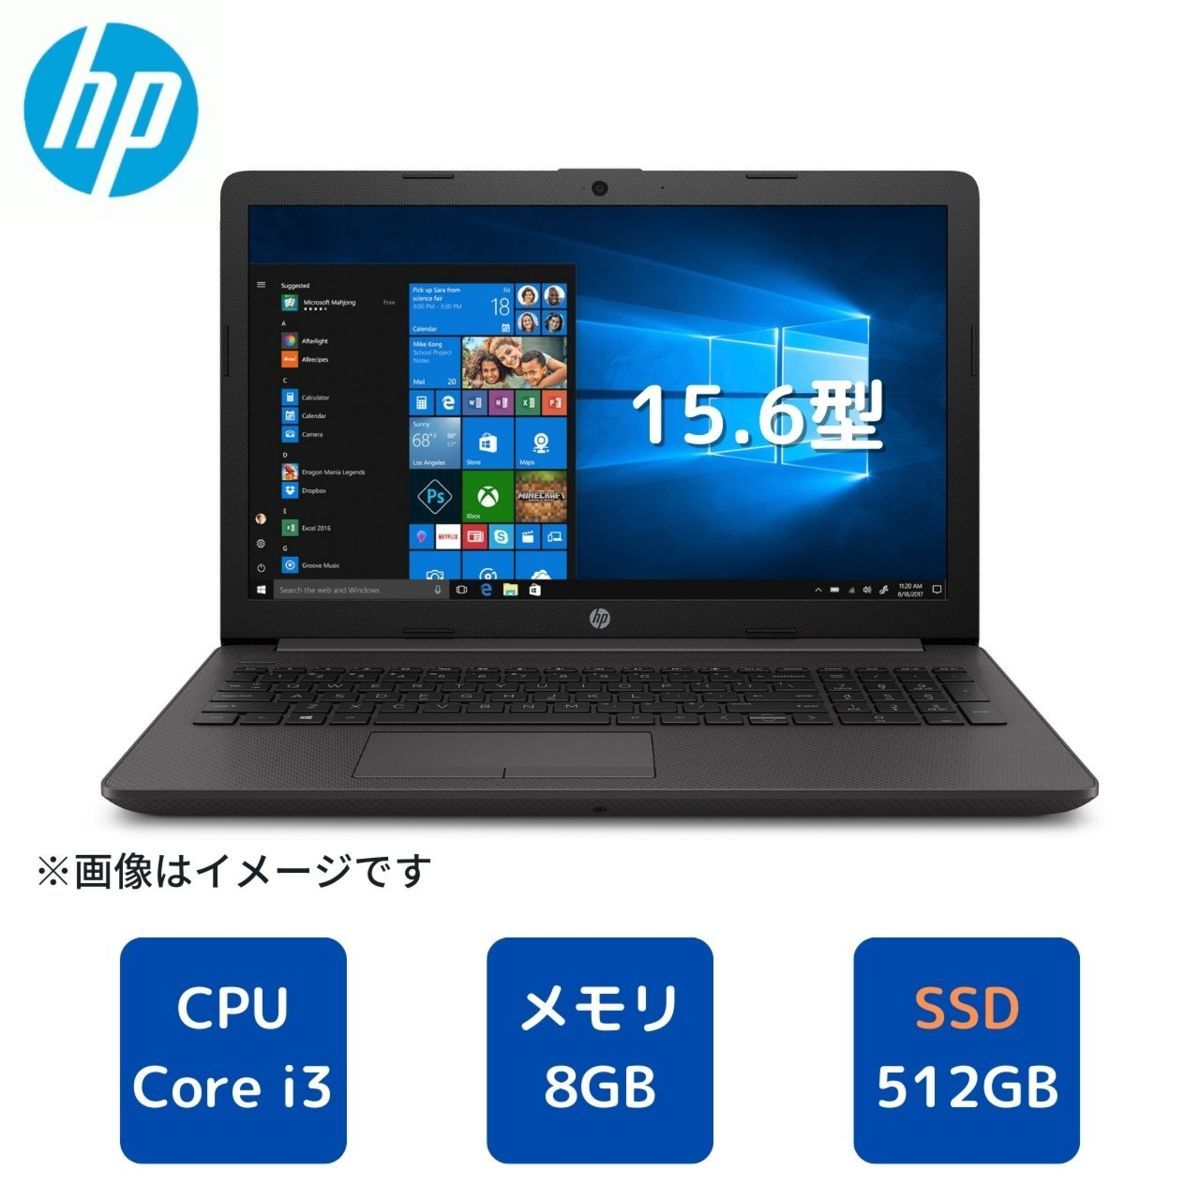 新品未開封 HP 250 G7/CT Refresh Notebook PC 新・東京生産スタンダードのサムネイル